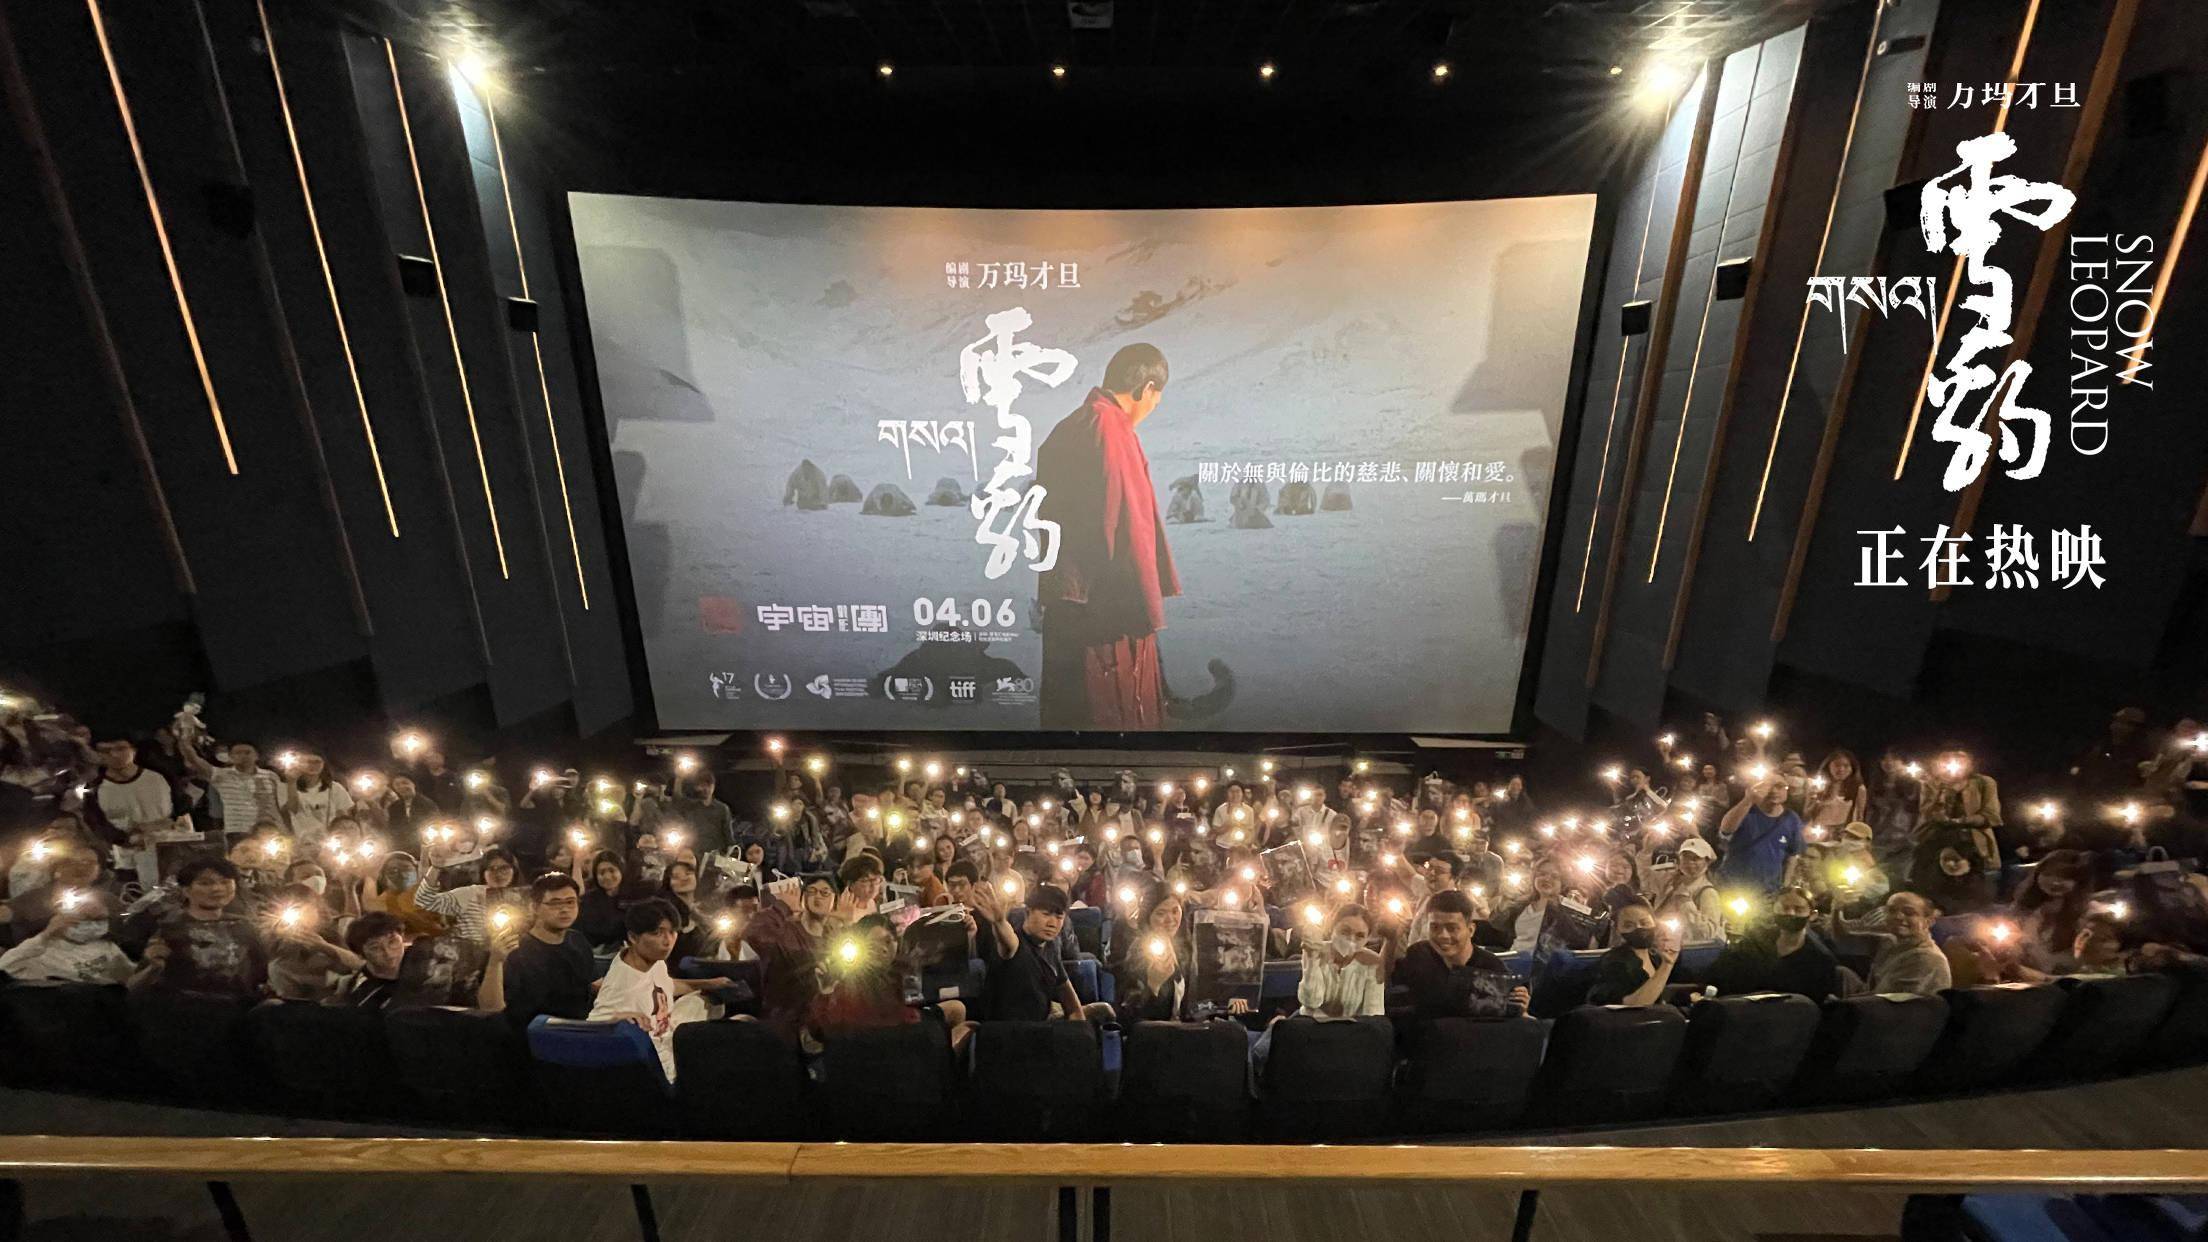 万玛才旦高口碑电影《雪豹》路演 影片价值表达获观众盛赞 